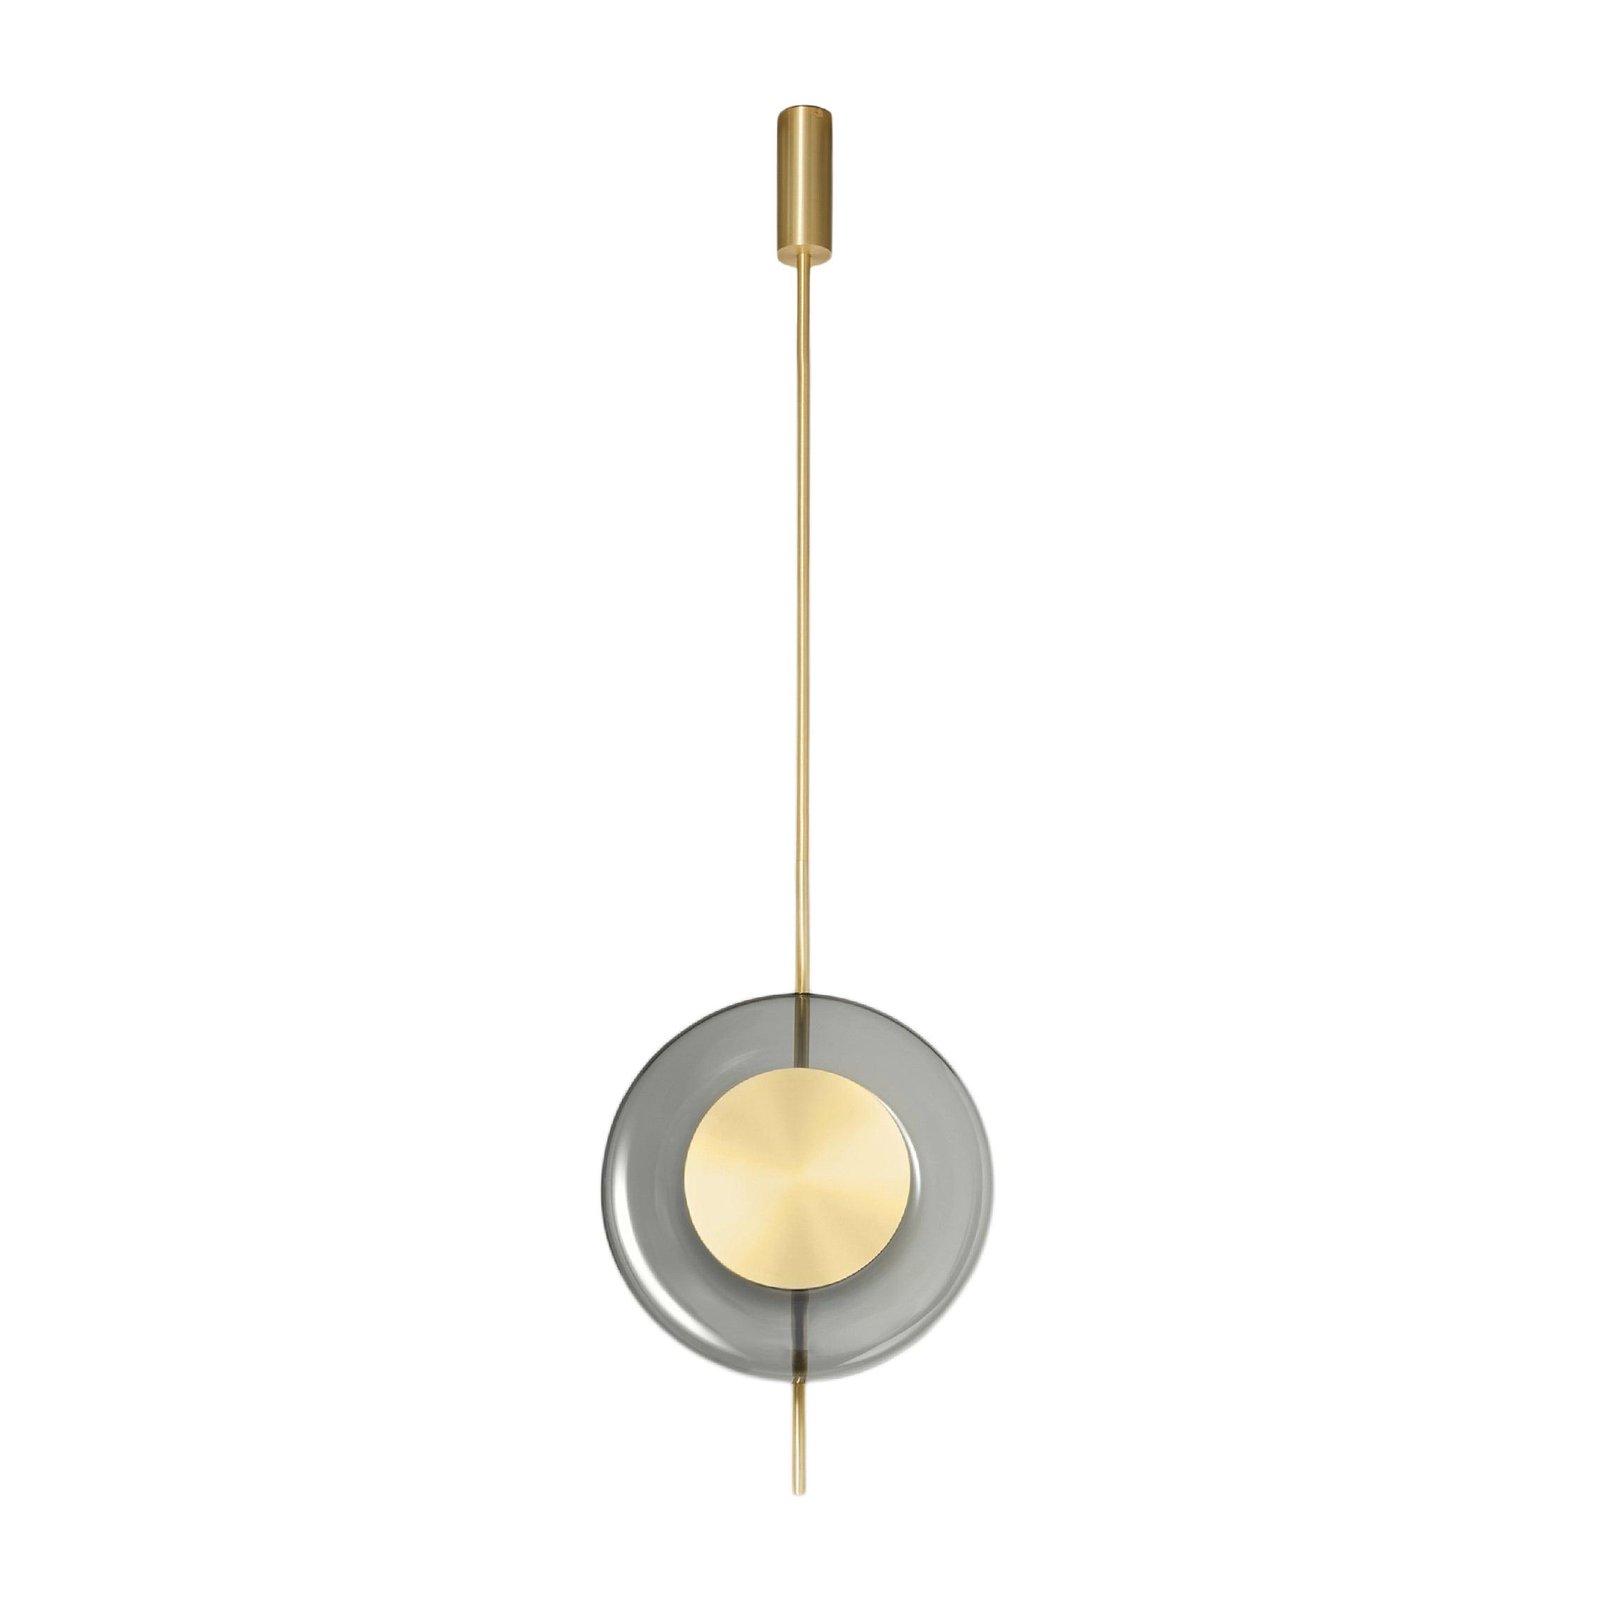 Gold Cool White Pendulum Pendant Lamp - Dimensions: ∅ 12.6″ x H 20.5″ (Dia 32cm x H 52cm)